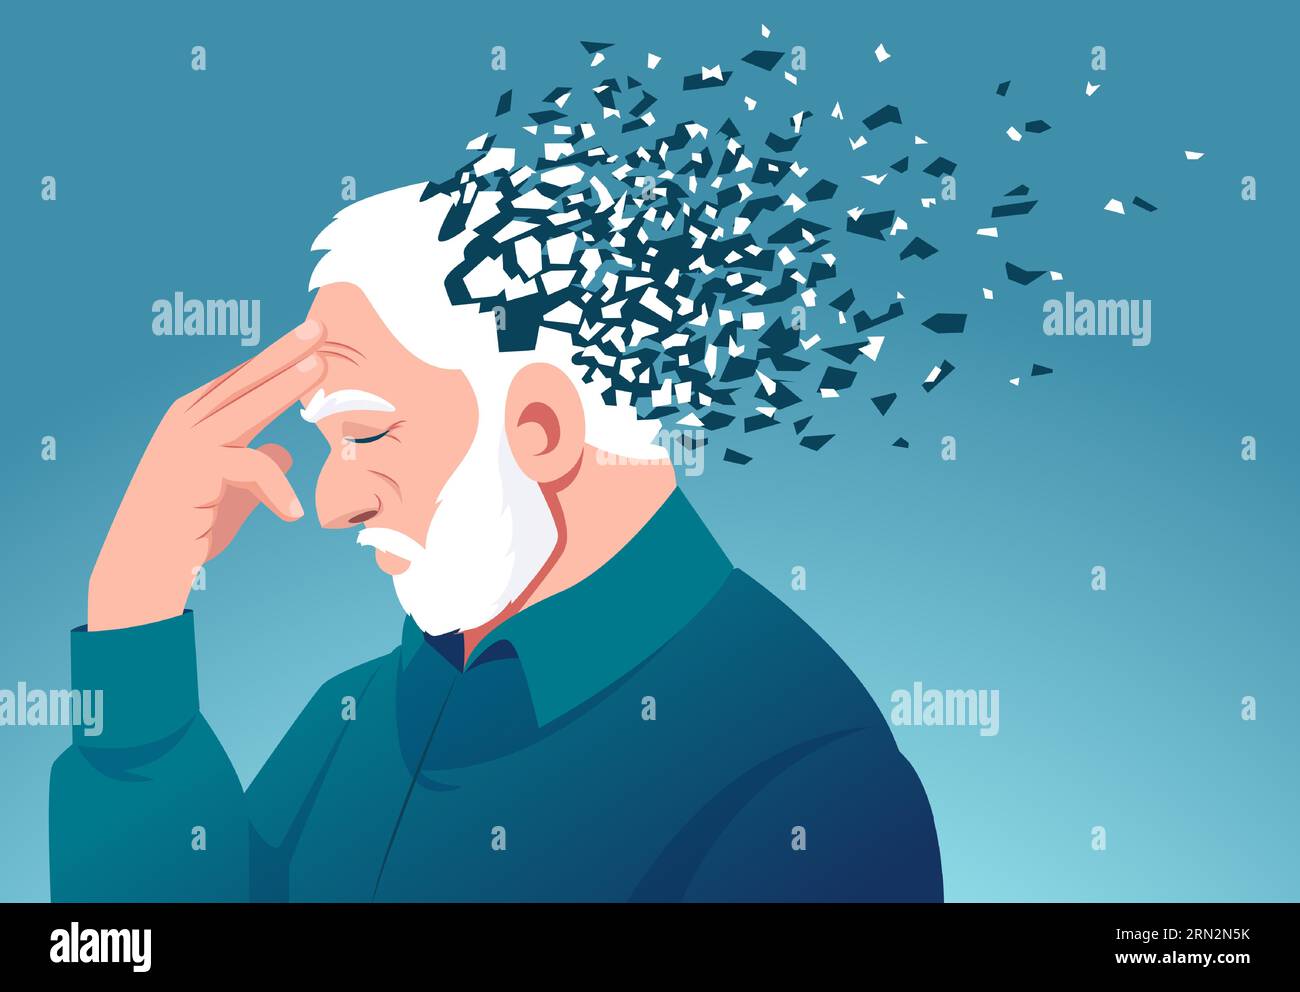 Gedächtnisverlust durch Demenz. Vektor eines älteren Mannes, der Kopfteile verliert, als Symbol einer verminderten Hirnfunktion Stock Vektor